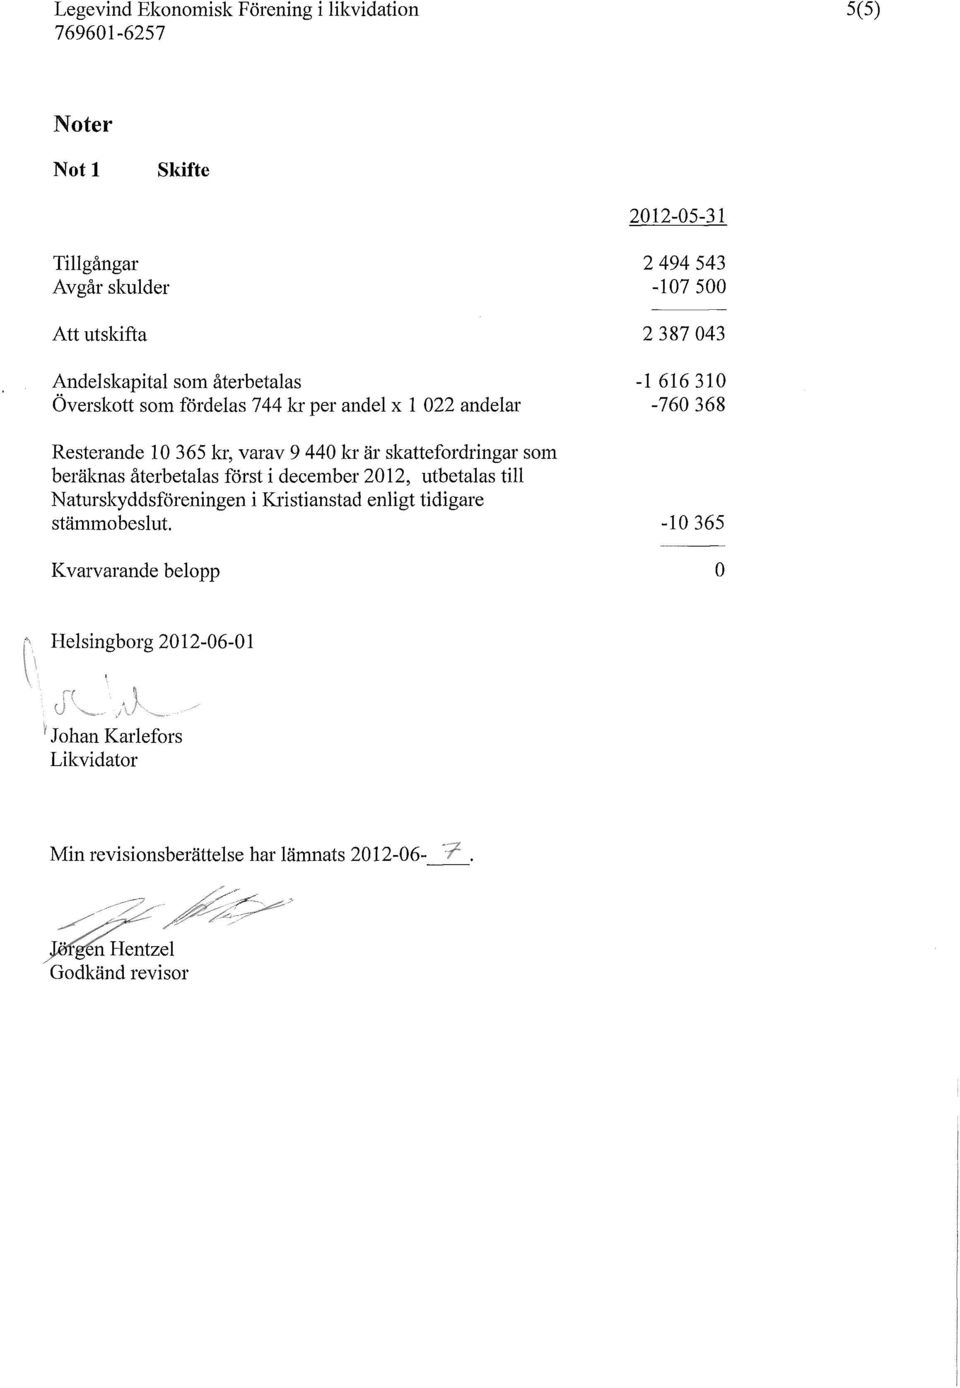 skattefordringar som beräknas återbetalas först i december 2012, utbetalas till Naturskyddsföreningen i Kristianstad enligt tidigare